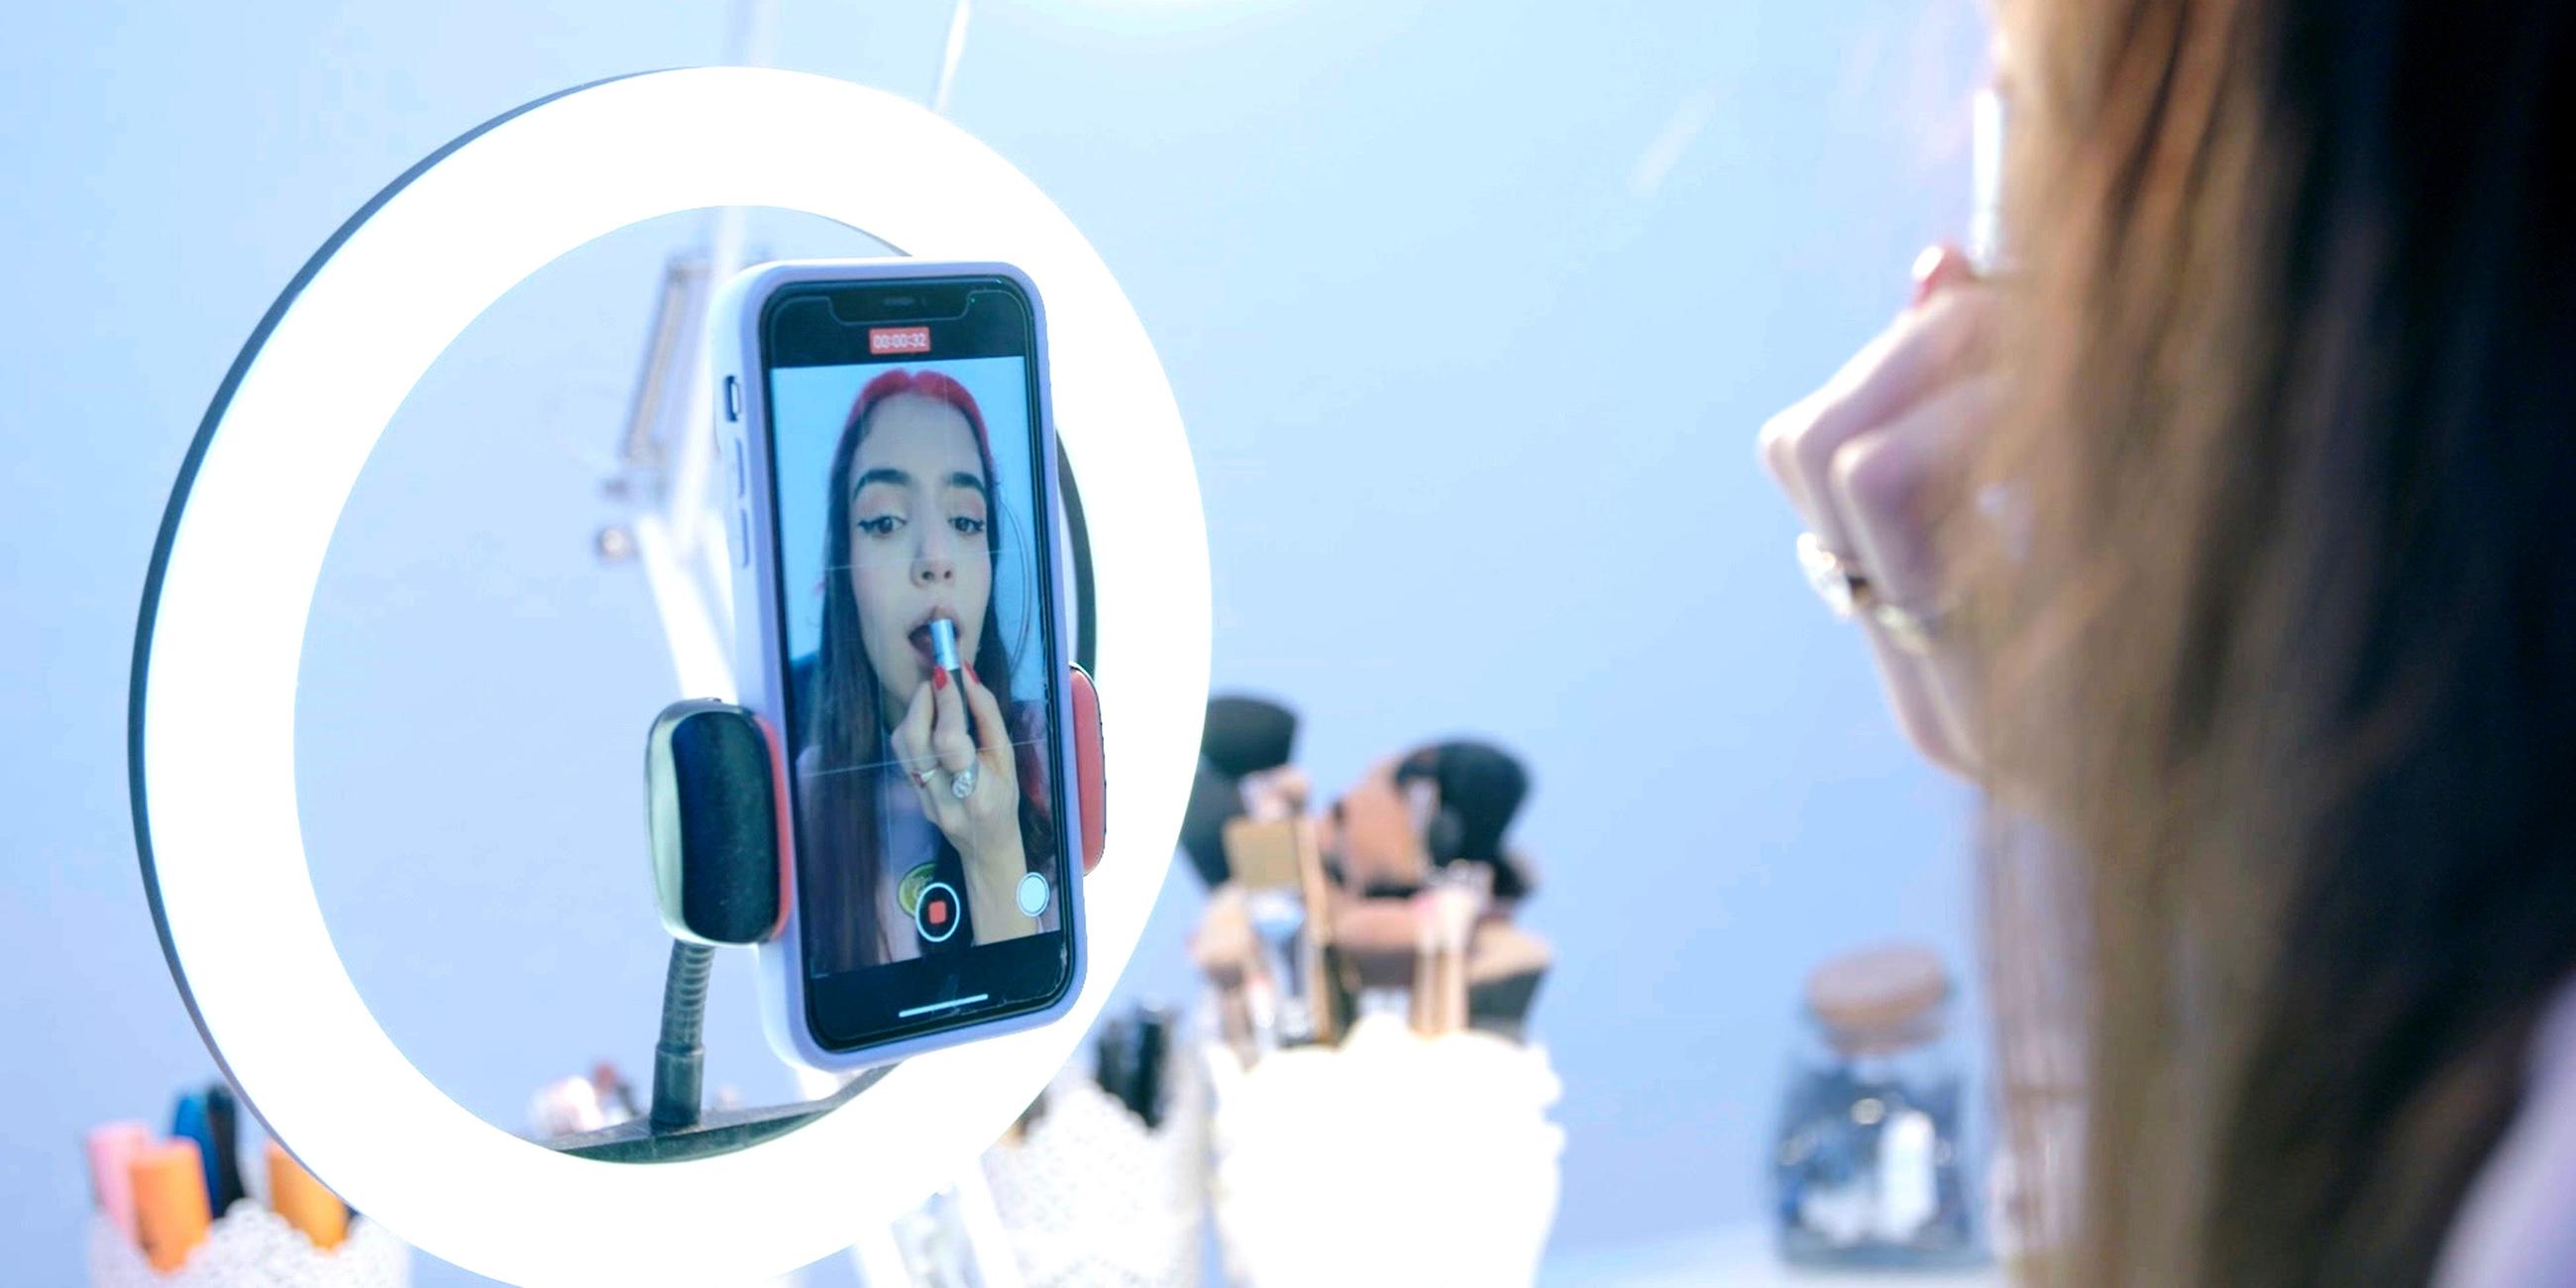  Die 17-jährige Hasti sieht sich in der Innenkamera ihres Handys an und schminkt sich dabei die Lippen. Das Handy ist an einem Ringlicht befestigt und auf einem Tisch befinden sich mehrere Make-up-Pinsel.